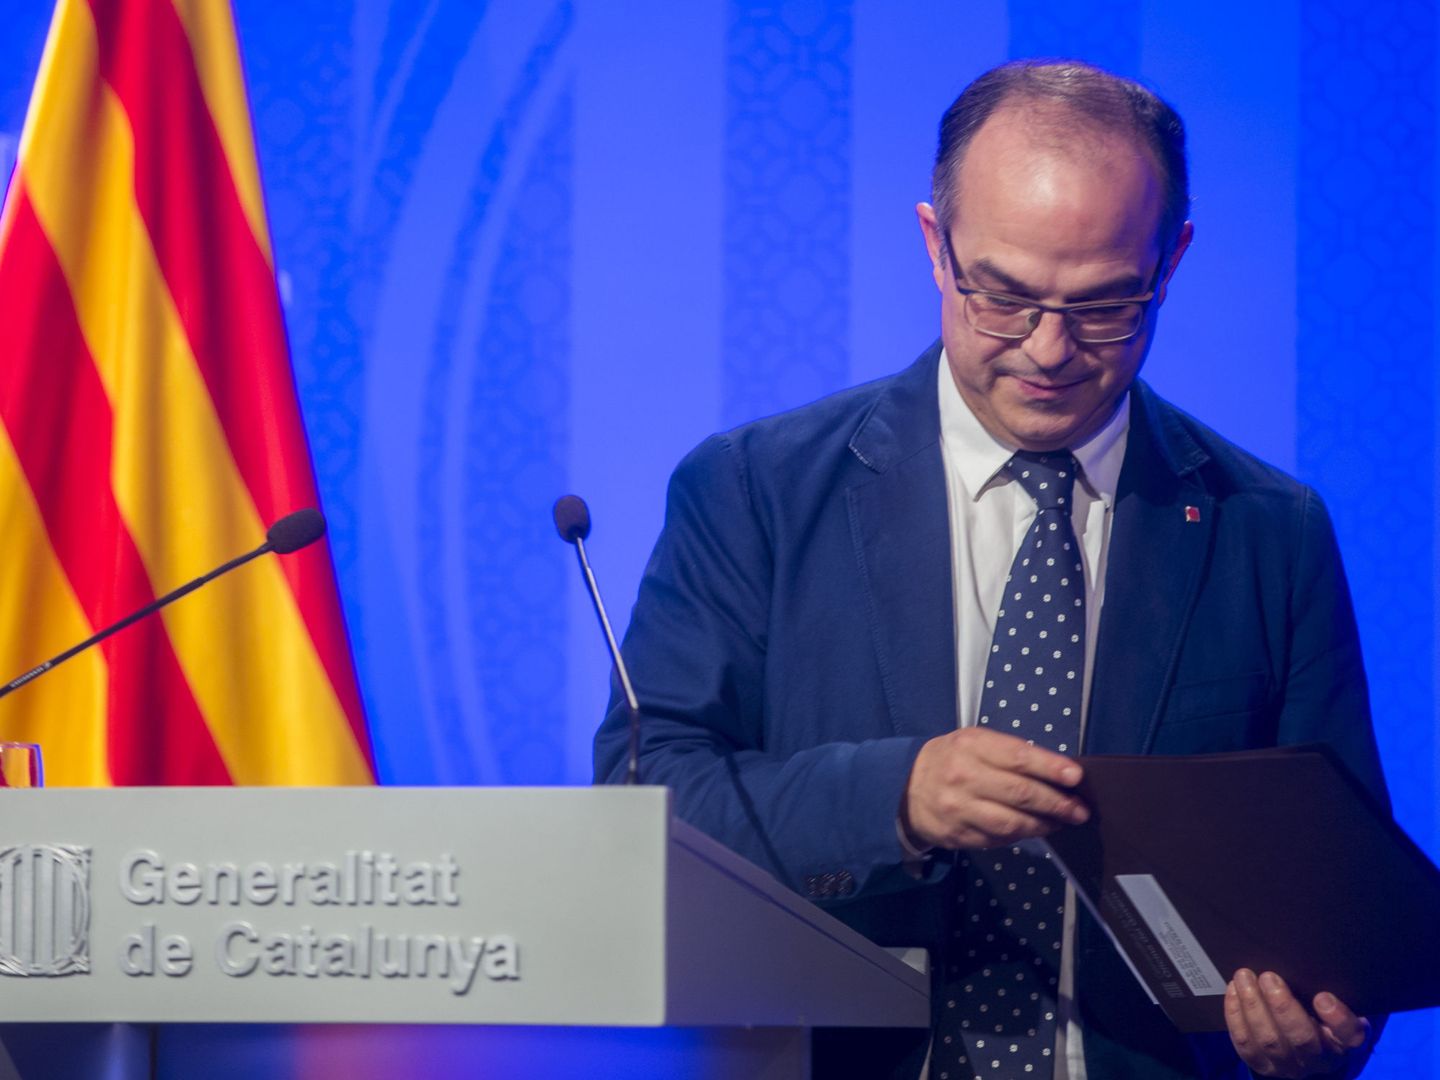 El portavoz del Gobierno de la Generalitat Jordi Turull, atiende a los medios de comunicación. (EFE)